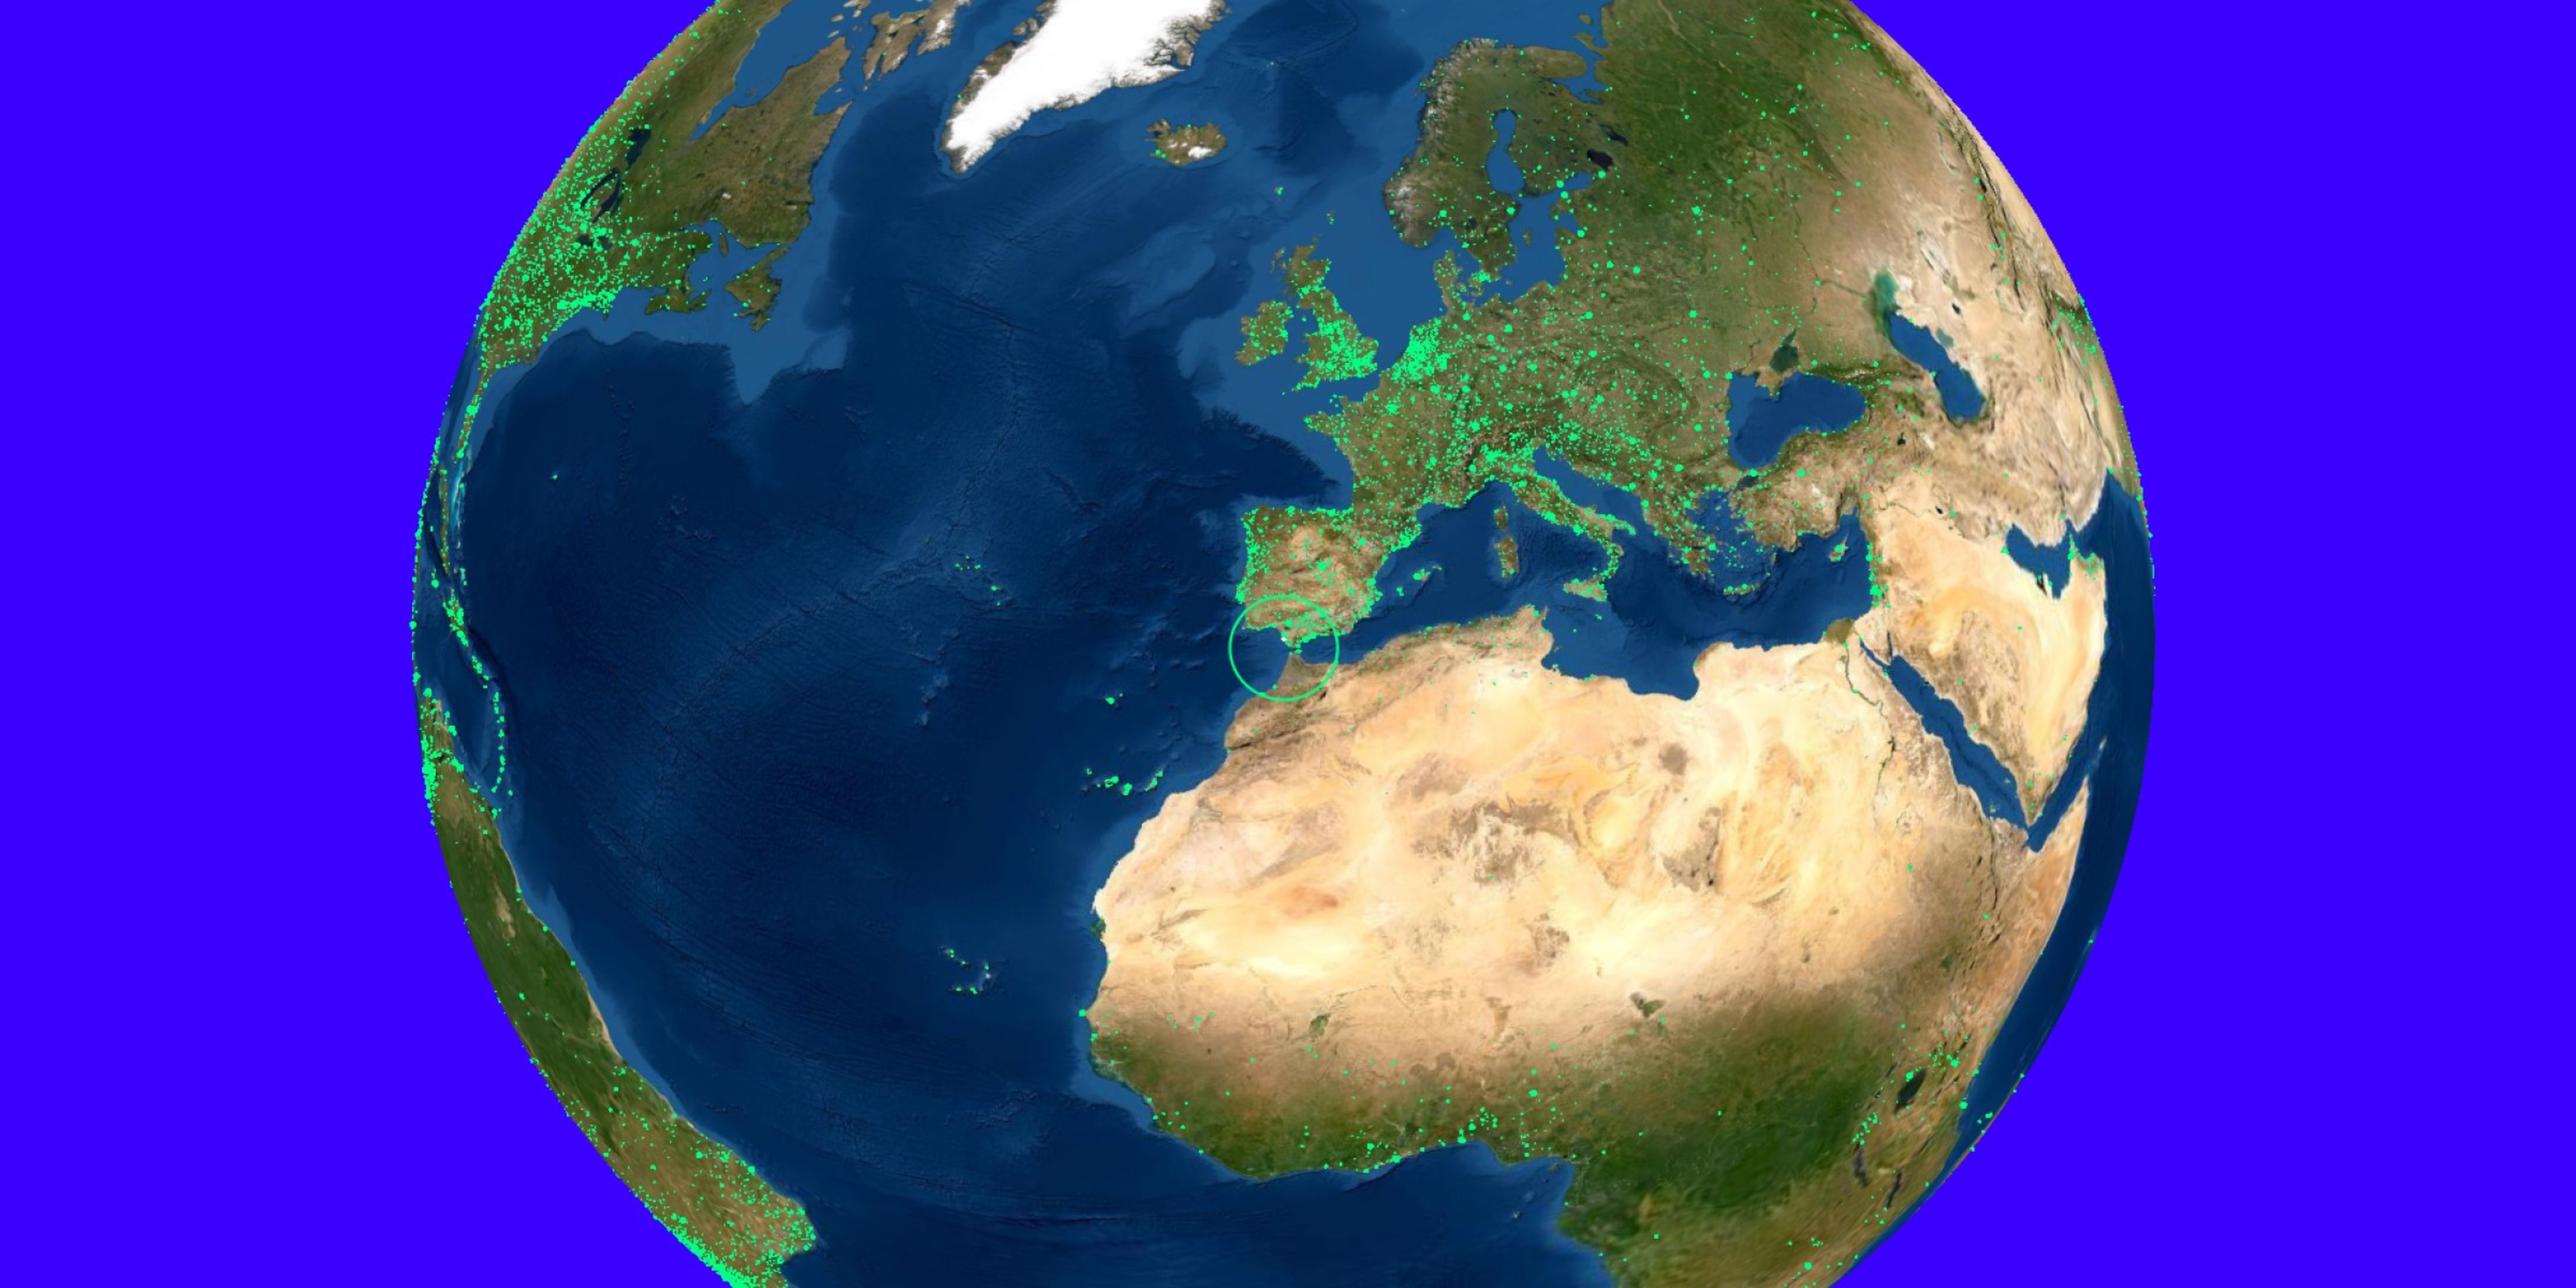 Escucha cualquier radio de cualquier parte del mundo con este Google Earth